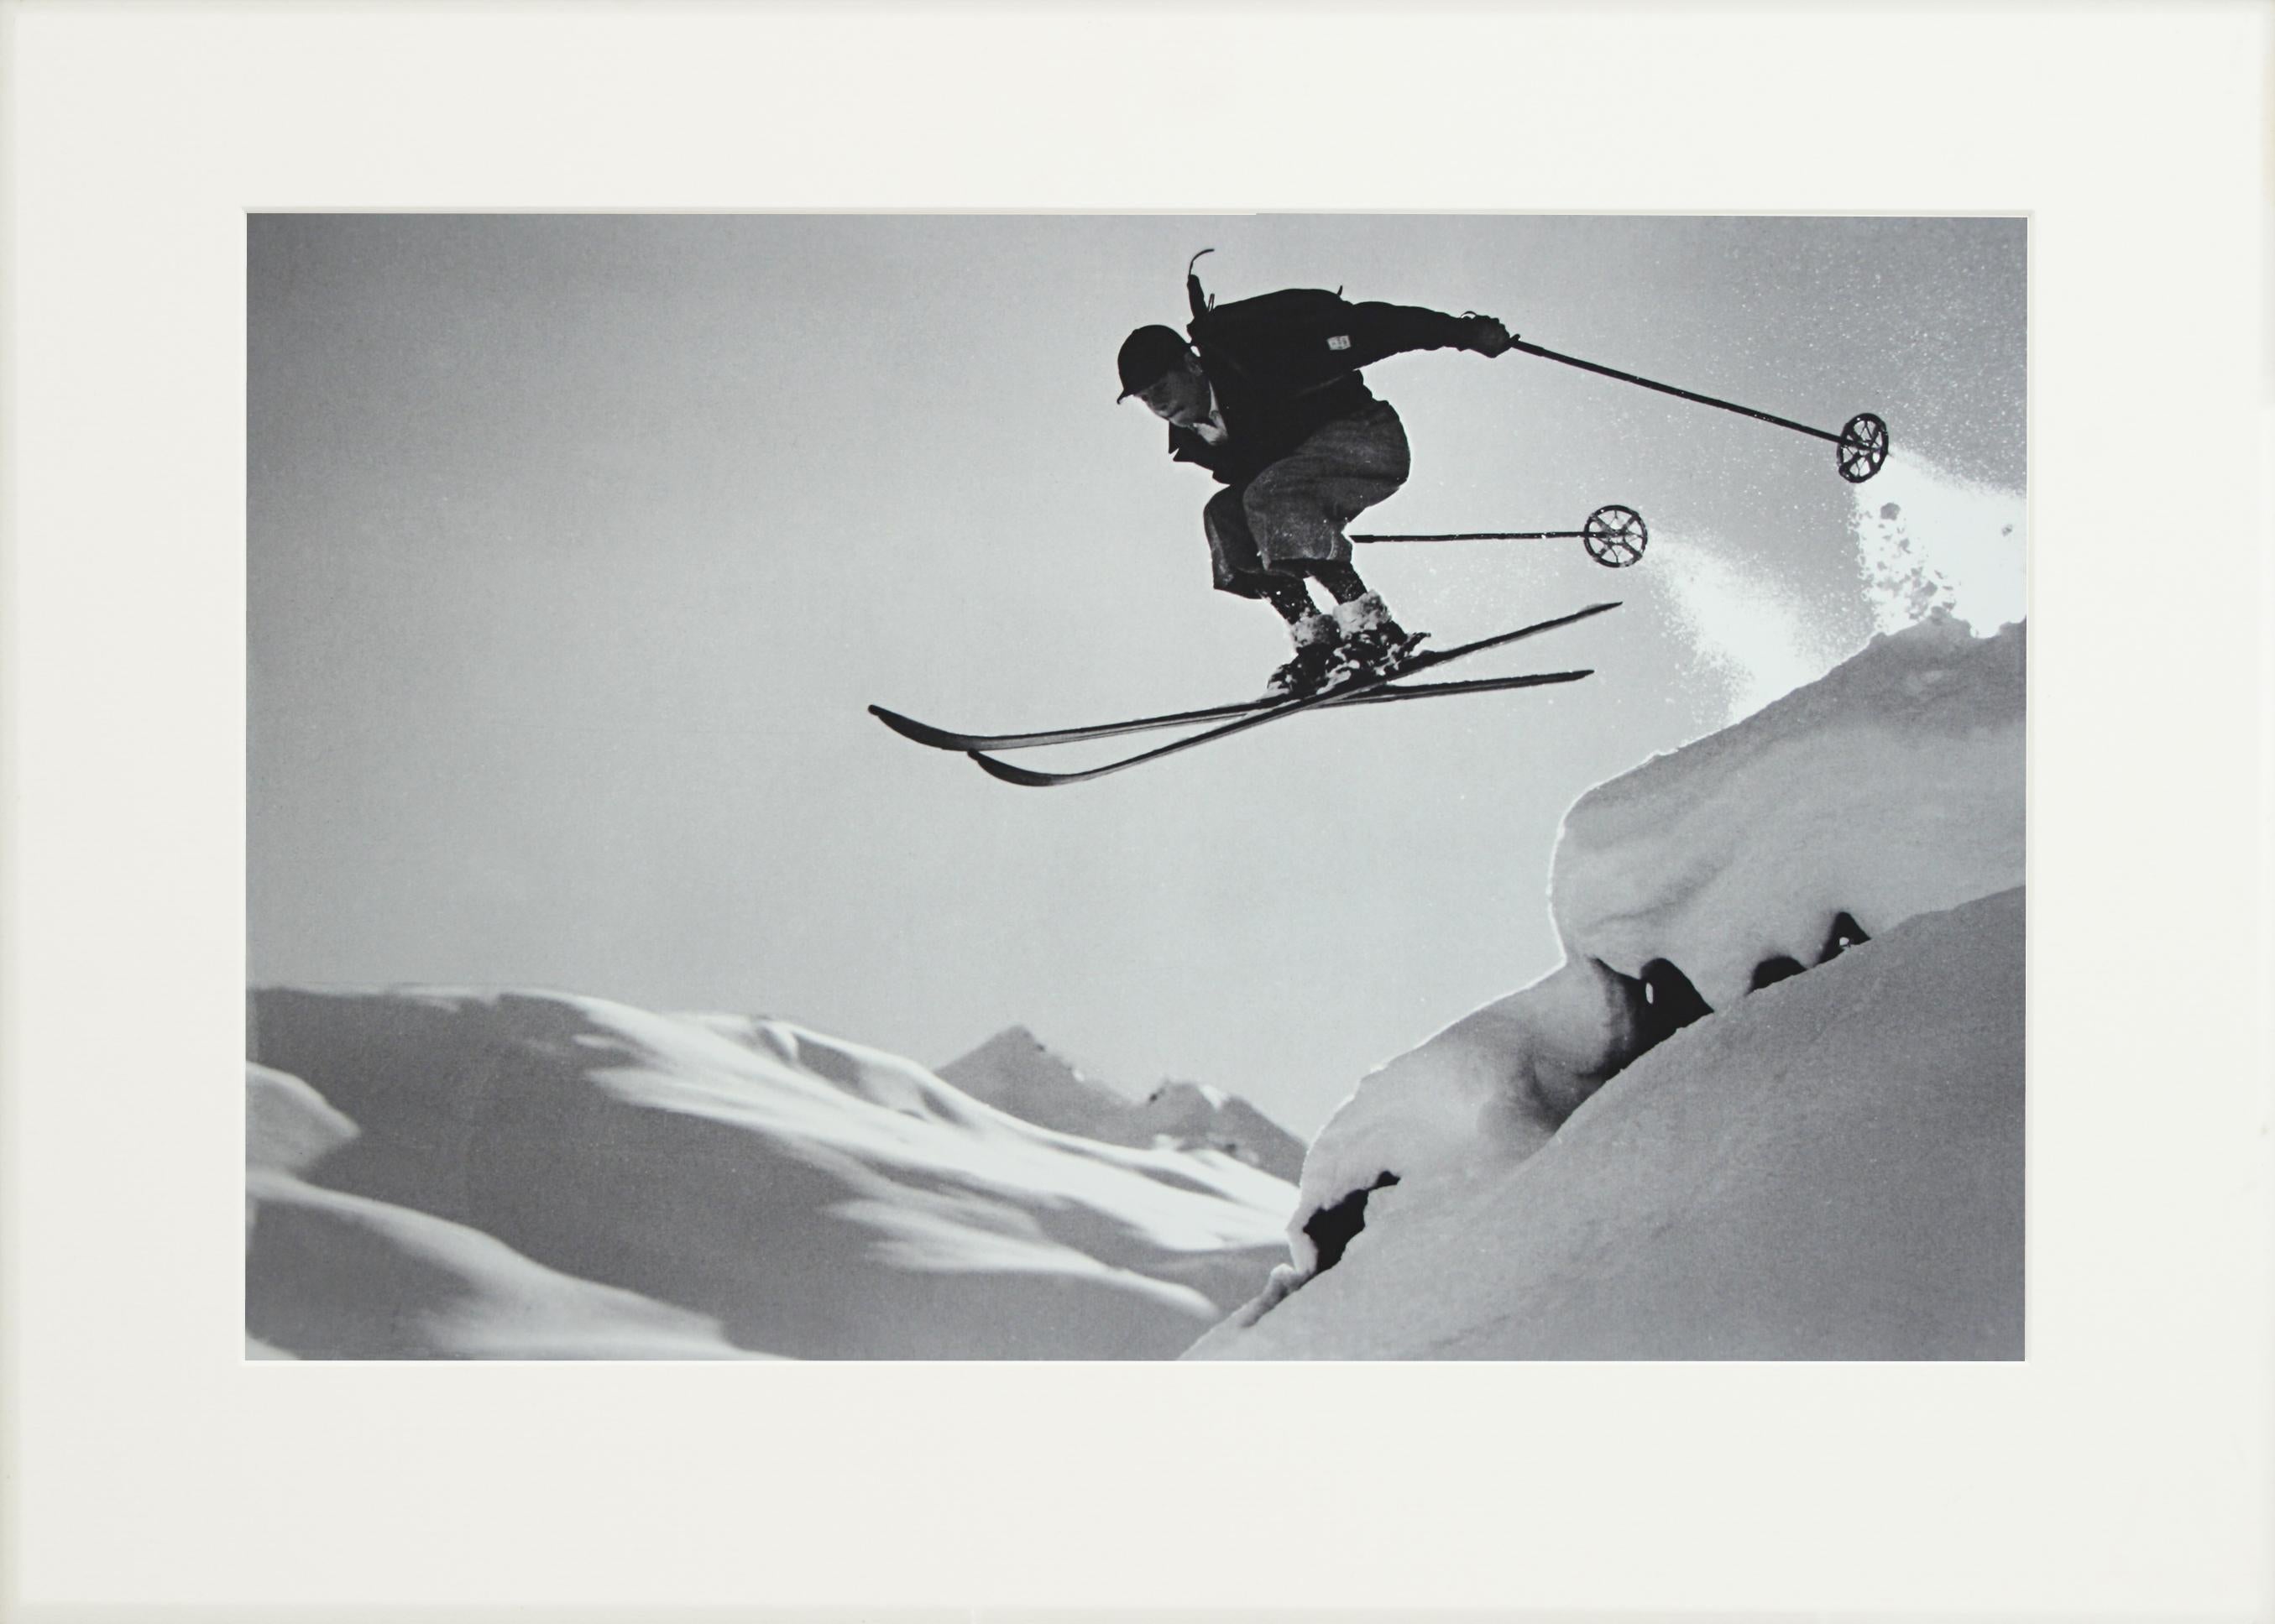 vintage ski photos